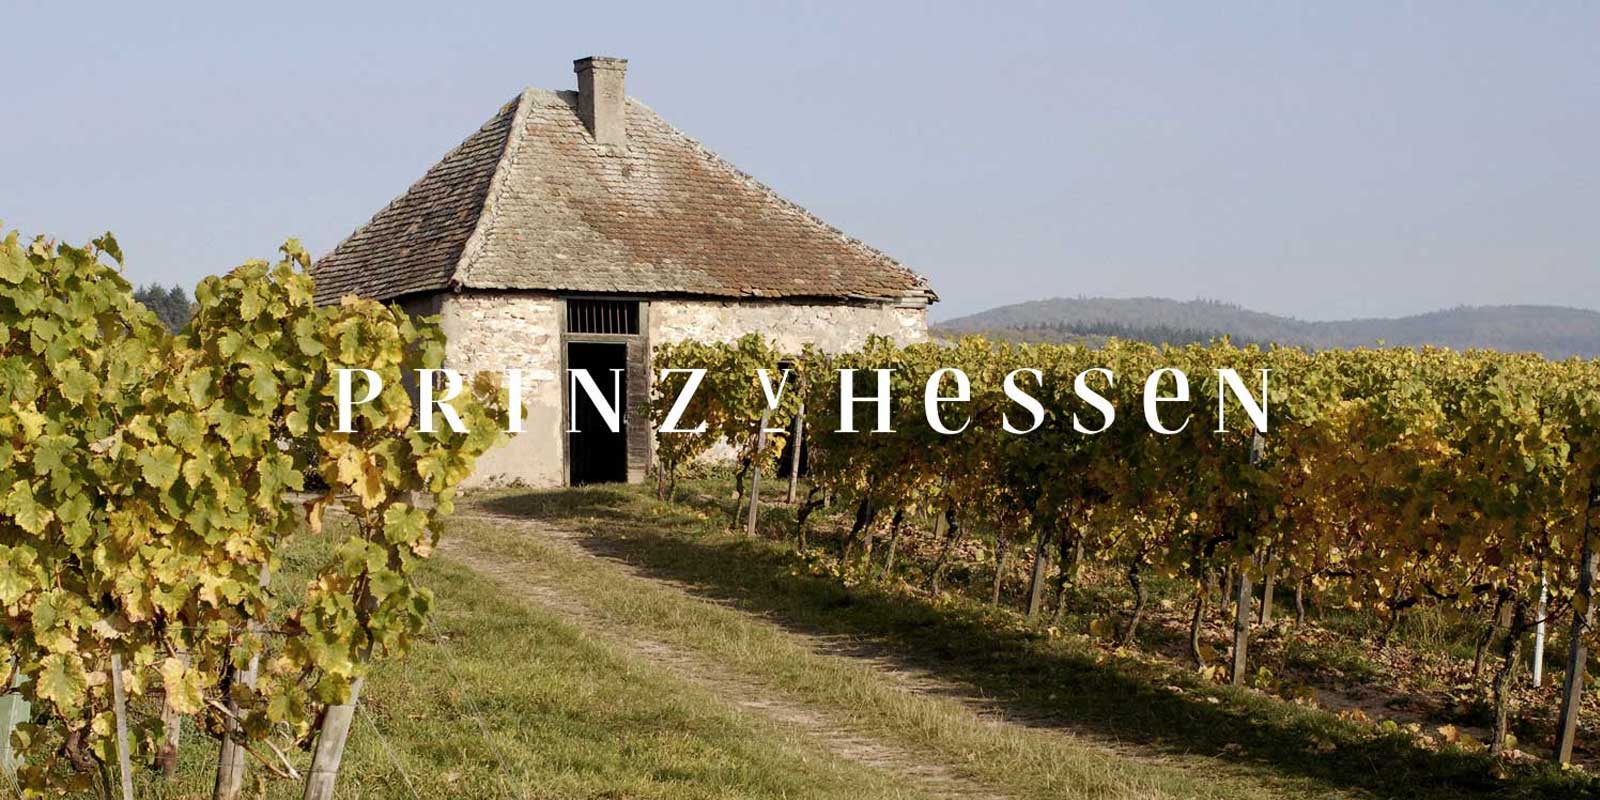 Azienda vinicola Principe d`Assia - regione vinicola del Rheingau L`azienda vinicola PRINZ VON HESSEN a Johannisberg nel Rheingau e uno dei piu importanti produttori di Riesling in Germania ed e membro fondatore della VDP dell`associazione regionale del Rheingau. Numerosi riconoscimenti in patria e all`estero riflettono la cantina PRINZ VON HESSEN, che e ai massimi livelli. I vini e gli spumanti della cantina PRINZ VON HESSEN hanno vinto numerosi premi e ricevuto importanti riconoscimenti internazionali.